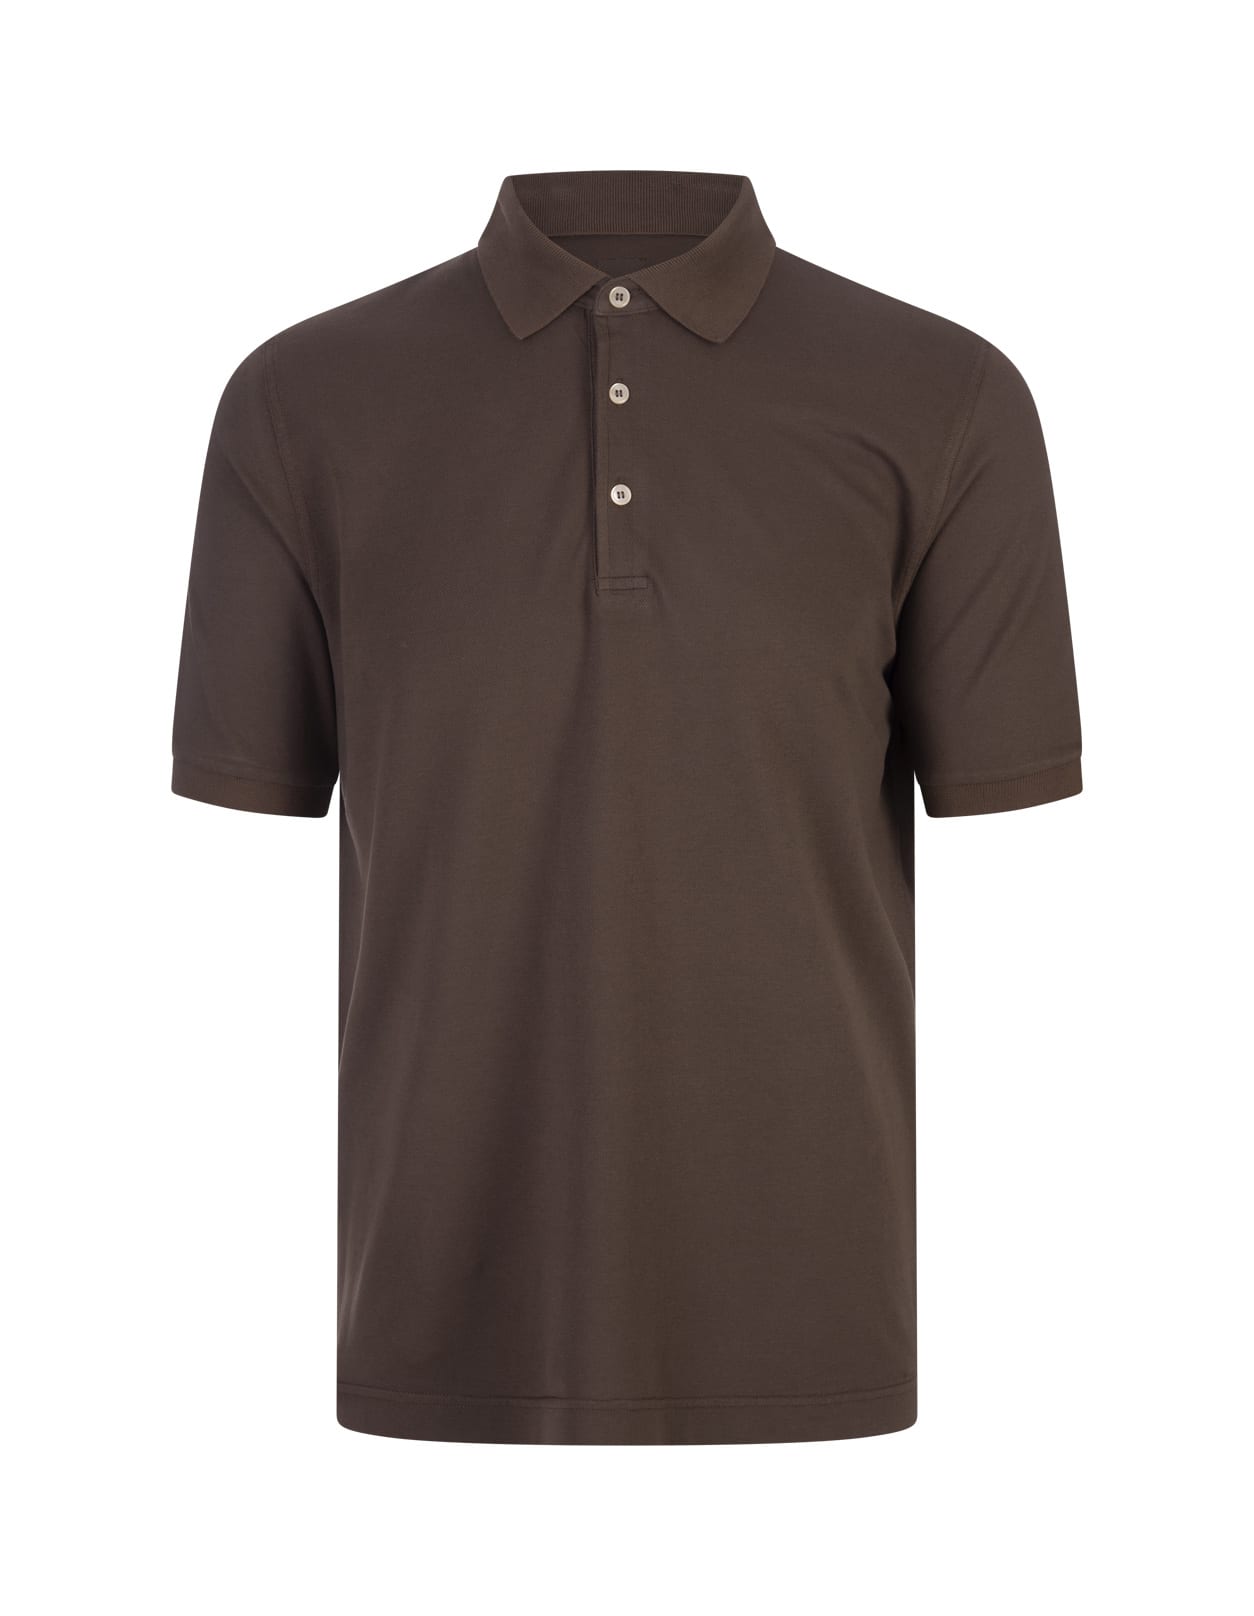 Fedeli Brown Cotton Pique Polo Shirt